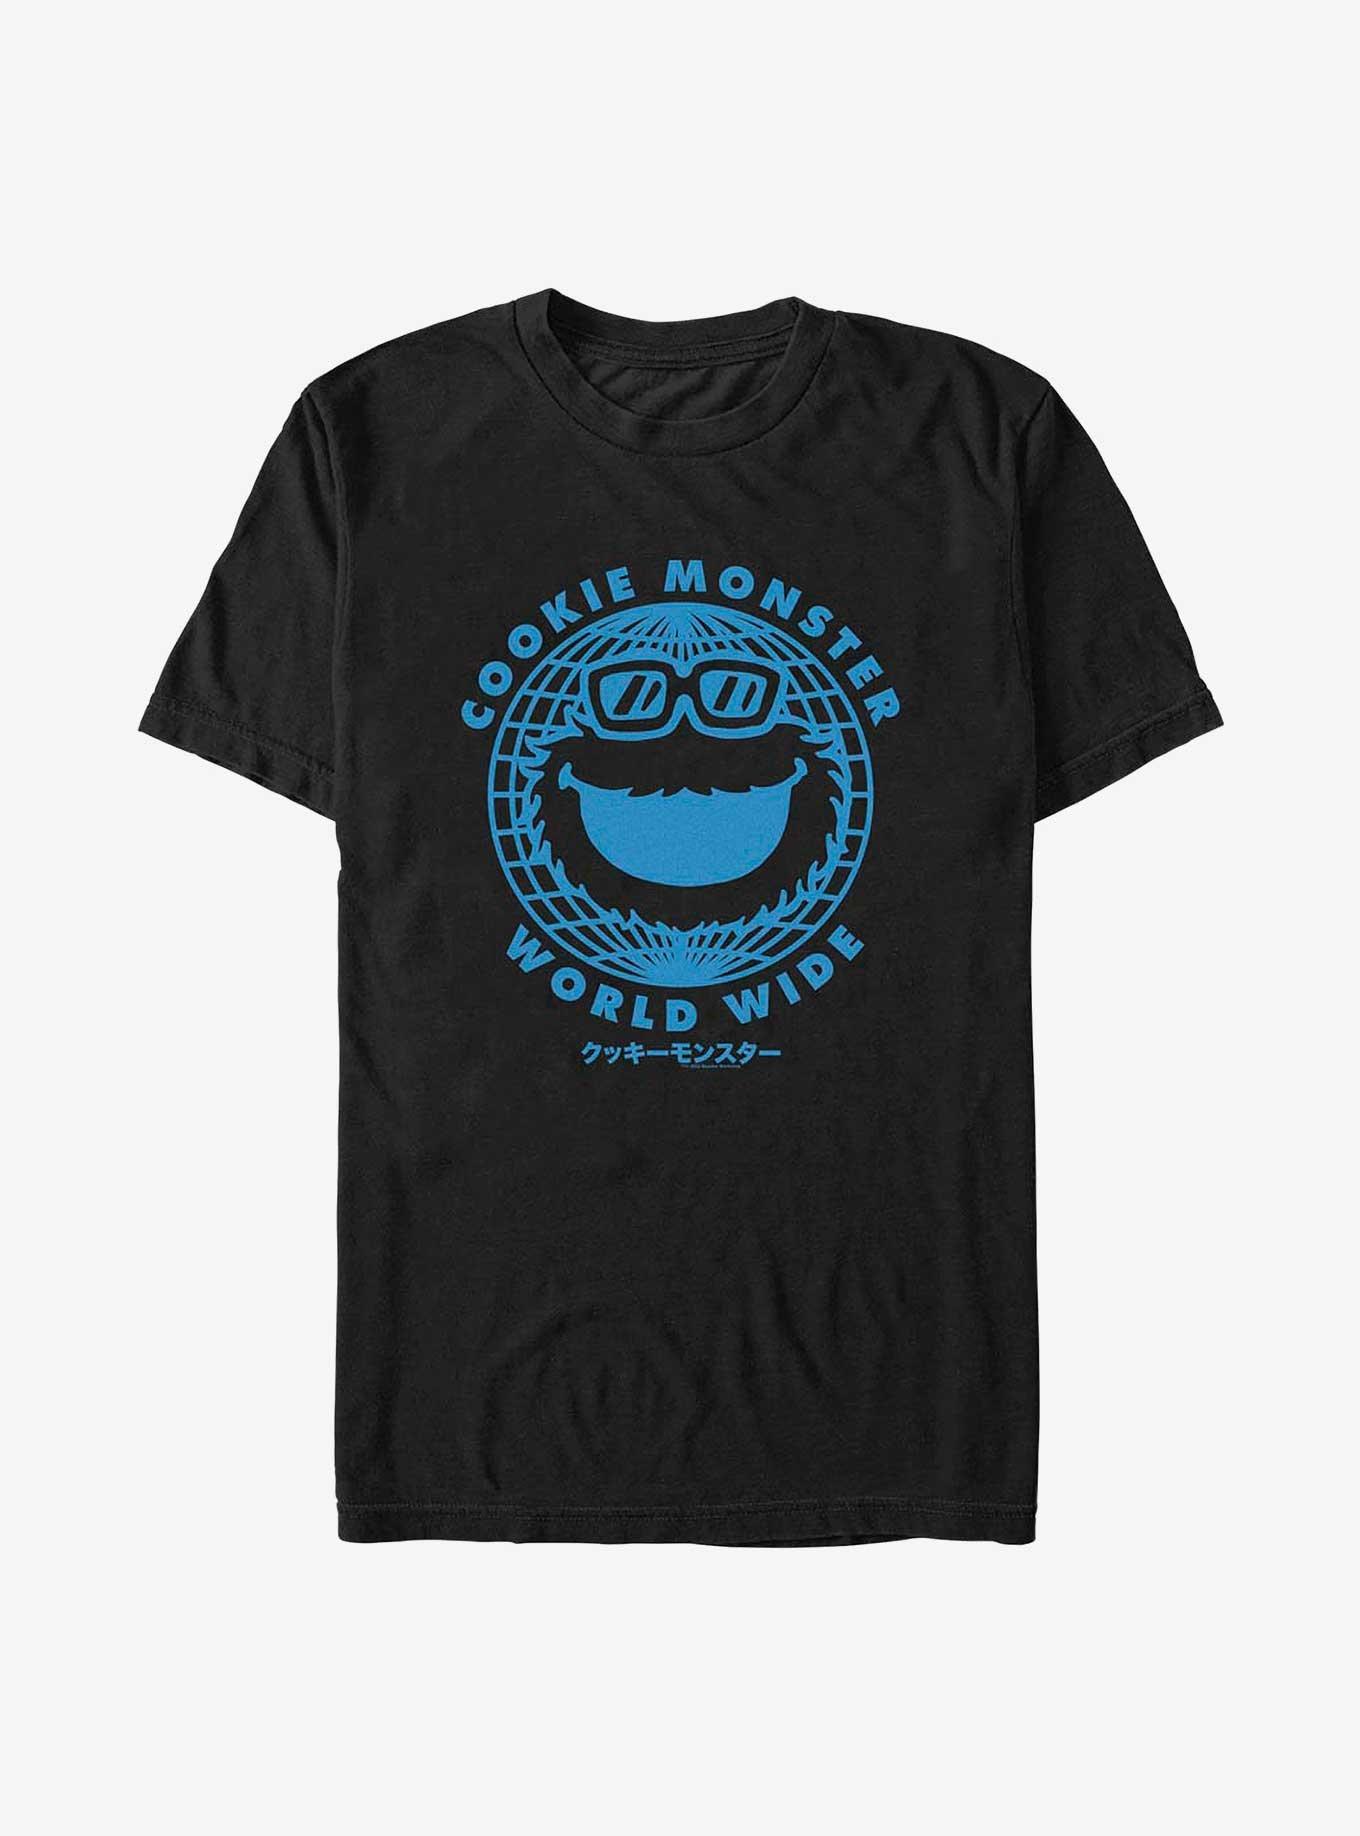 Sesame Street Cookie Monster World Wide T-Shirt, BLACK, hi-res